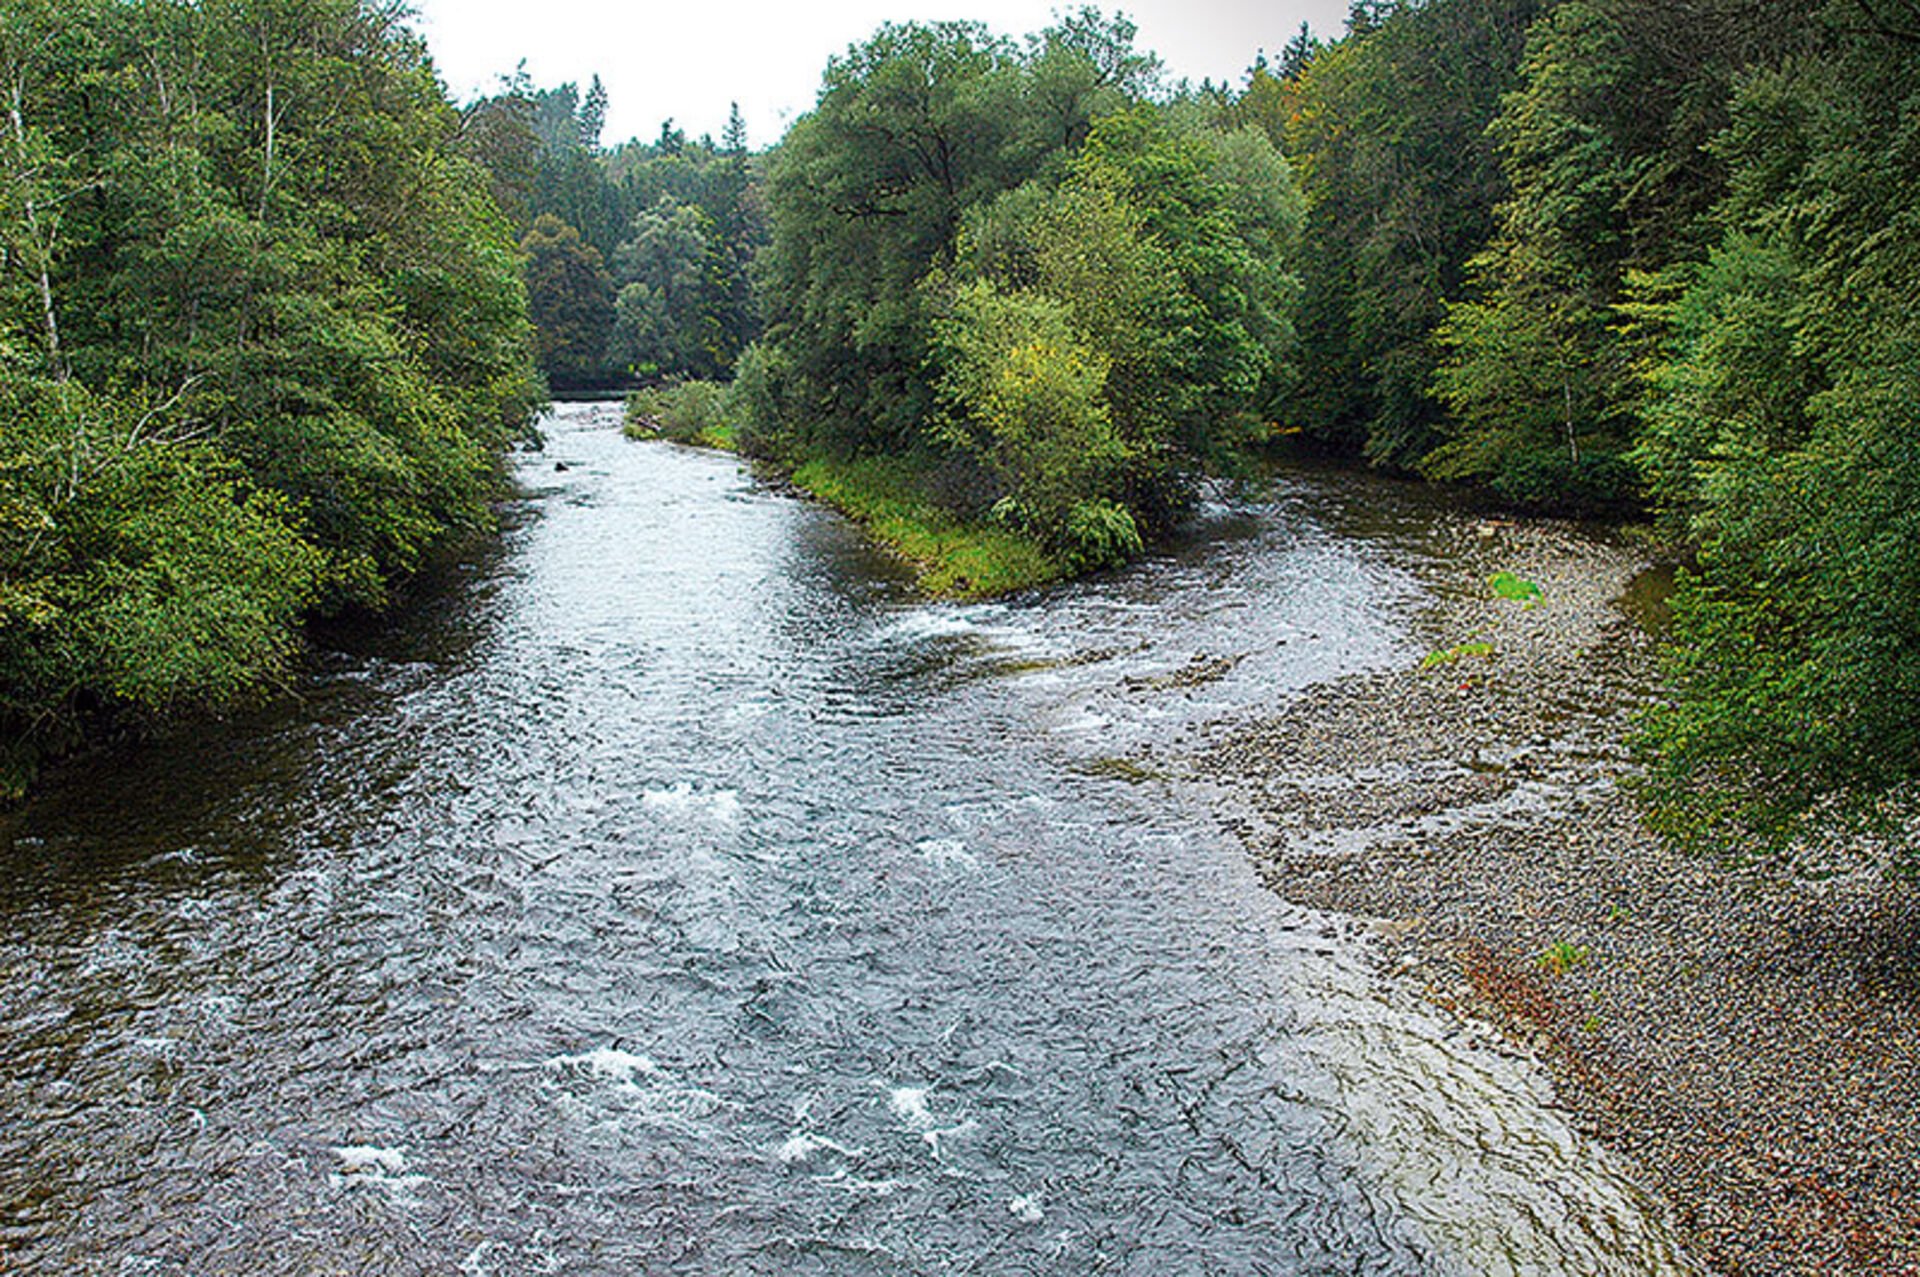  La confluence entre l'Argen supérieure et l'Argen inférieure est un exemple de ce que l'on peut imaginer des sections naturelles d'une rivière à truites lacustres. © Peter Rey  